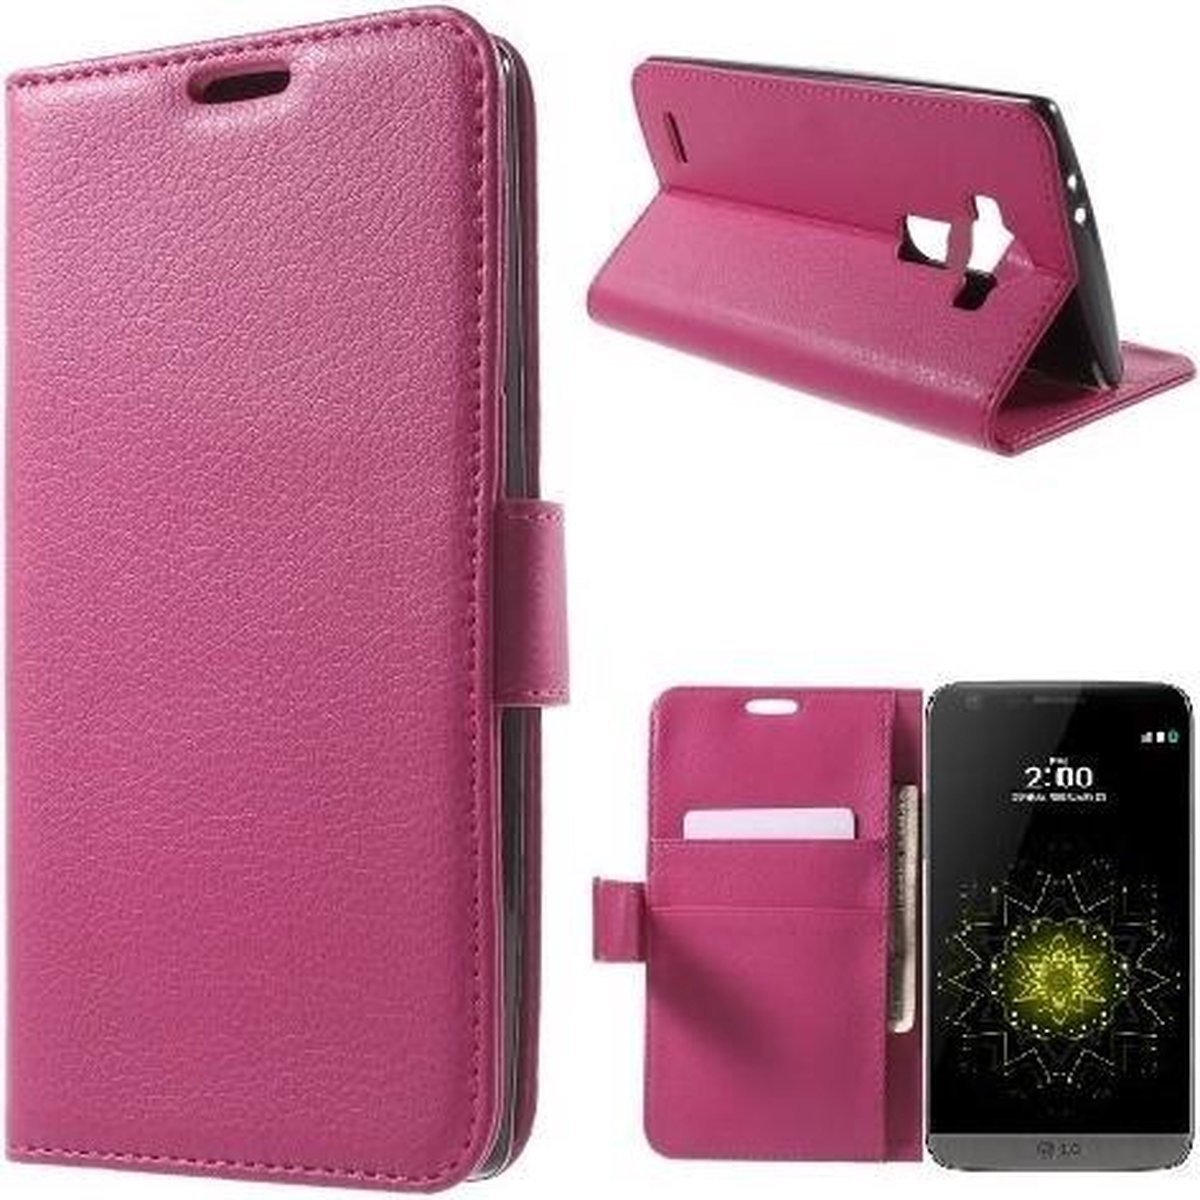 Litchi Cover wallet case hoesje LG G5 roze